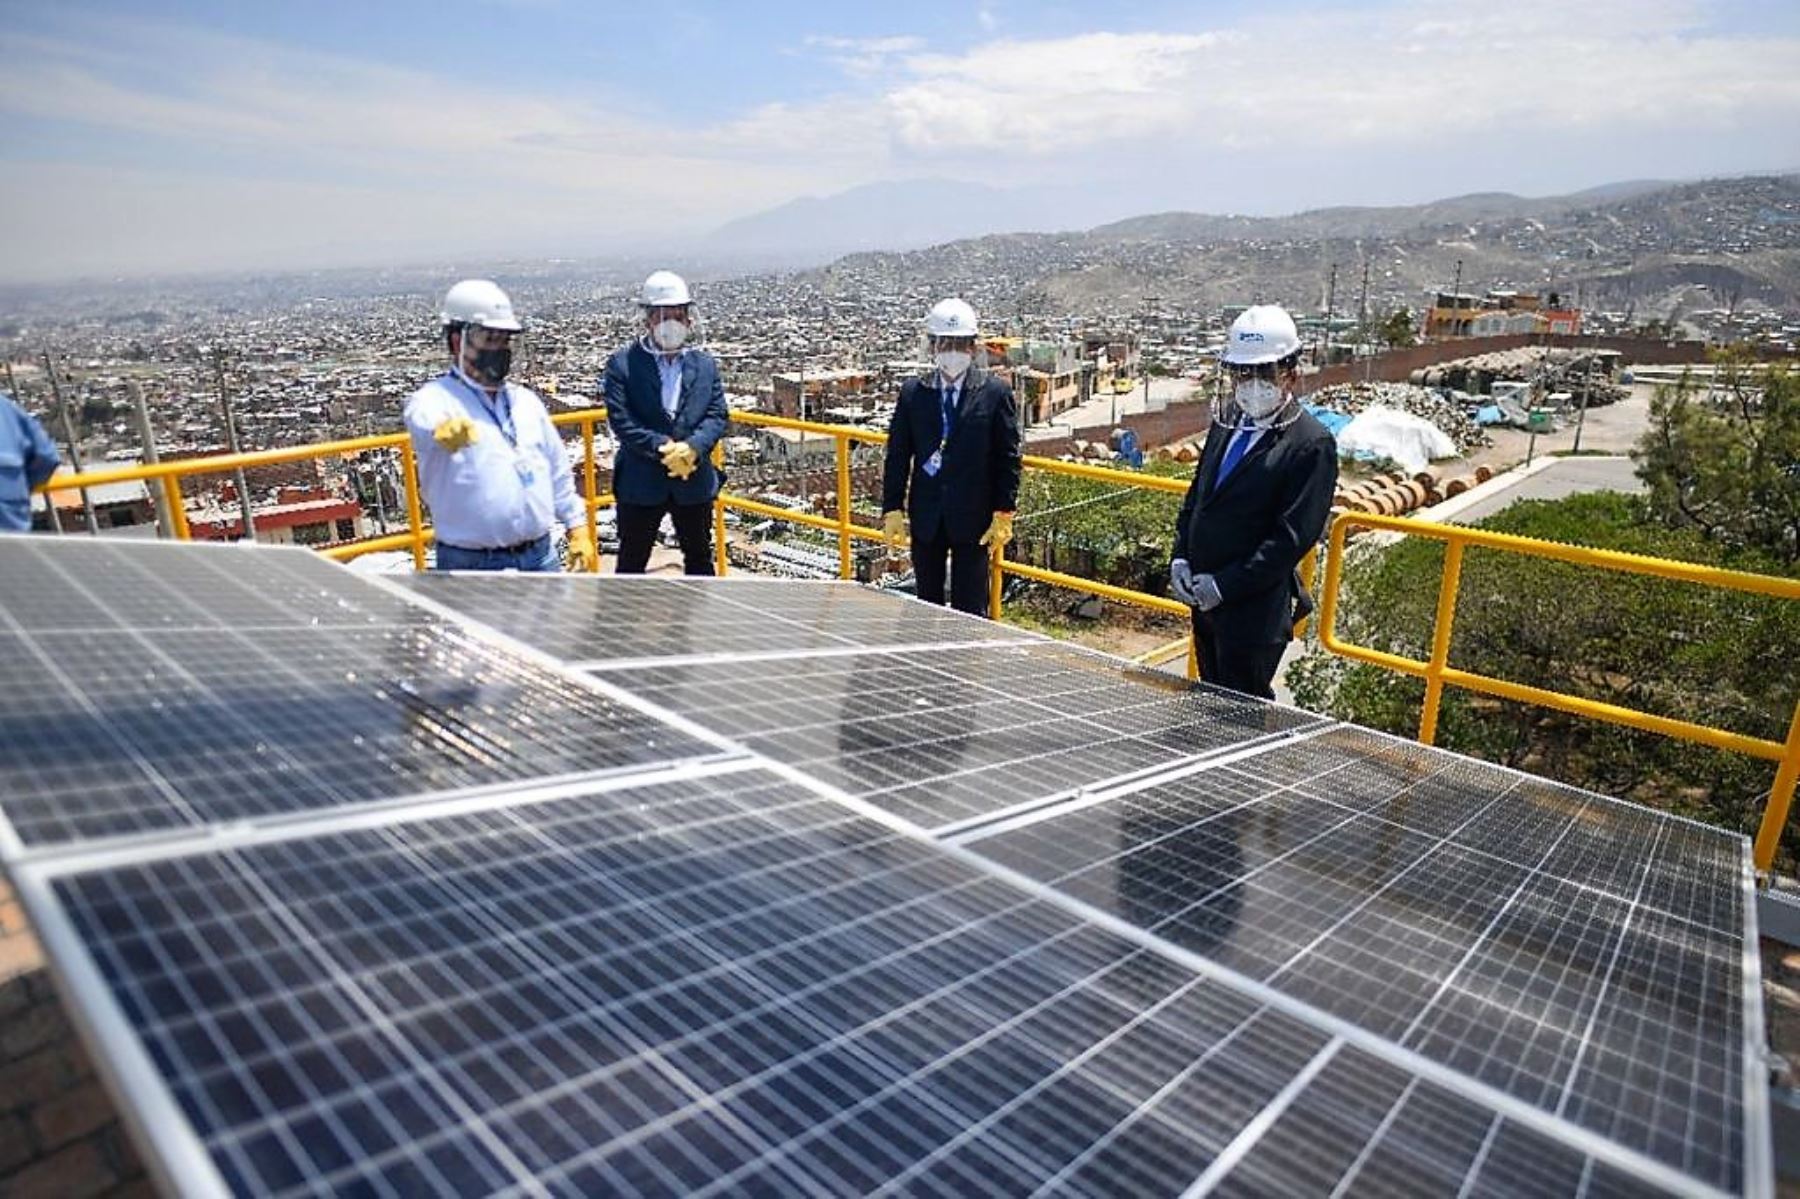 En un esfuerzo por mejorar el uso de energías limpias, la empresa Seal instaló paneles fotovoltaicos en Arequipa. Foto: ANDINA/Difusión